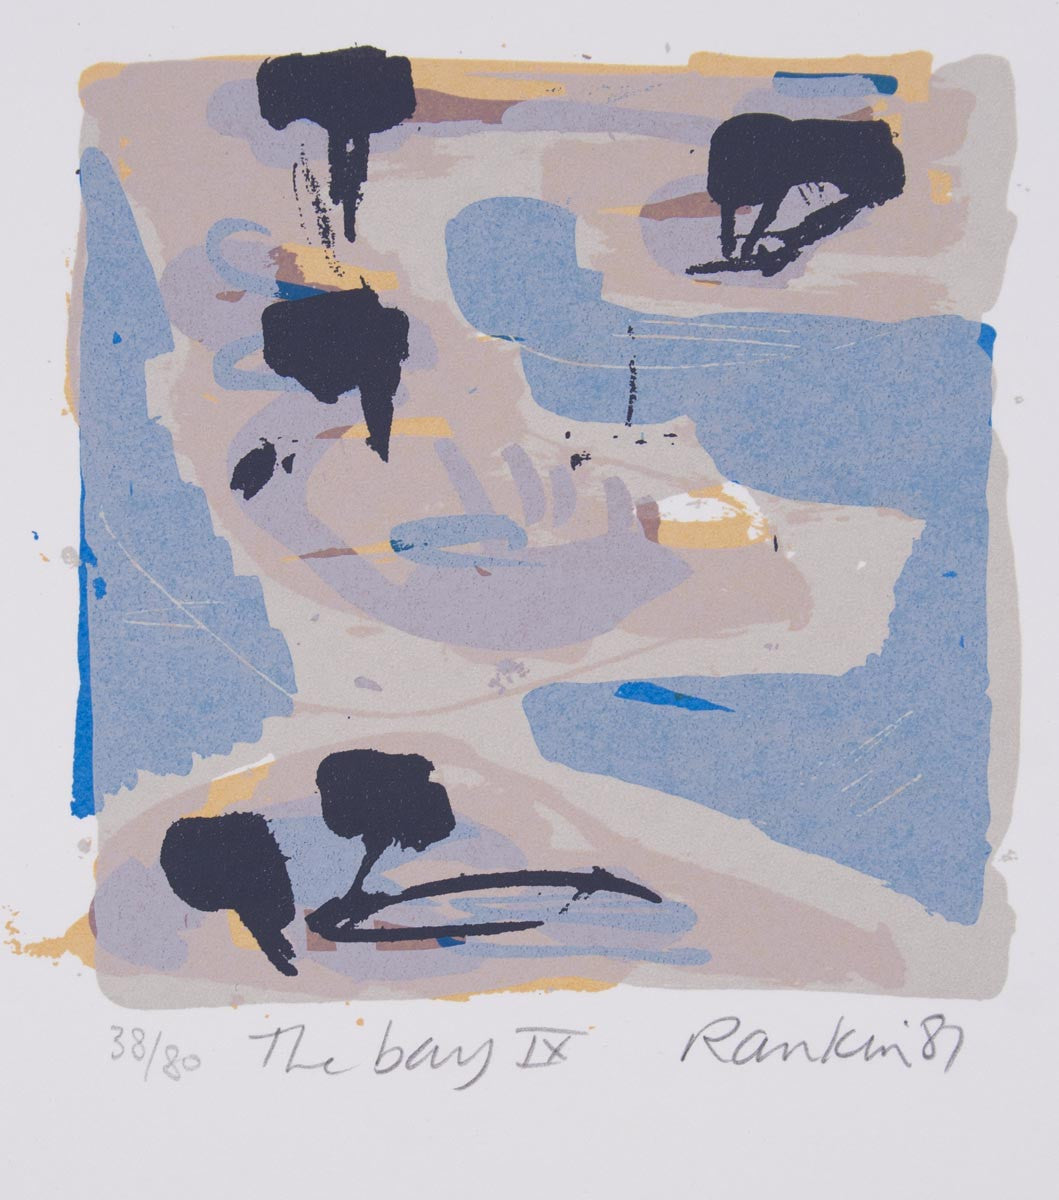 David Rankin 'The Bay IX' - screenprint on paper